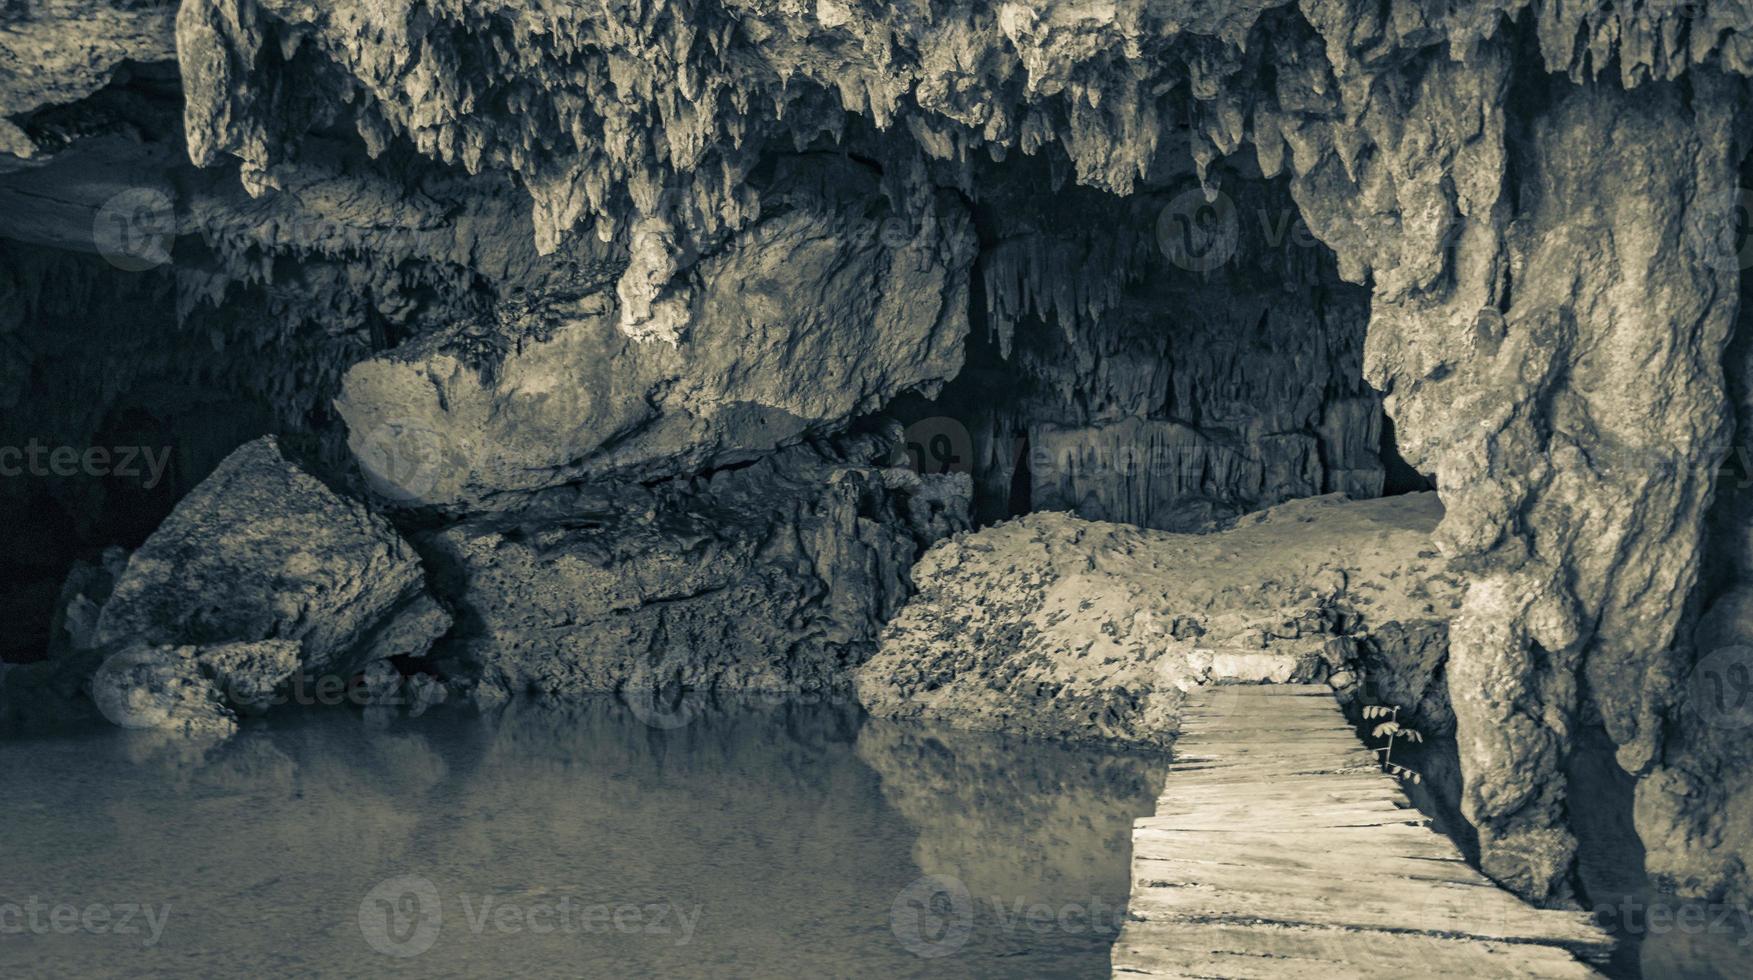 fantastiskt blått turkost vatten och kalkstensgrotta sjunkhål cenote mexico. foto